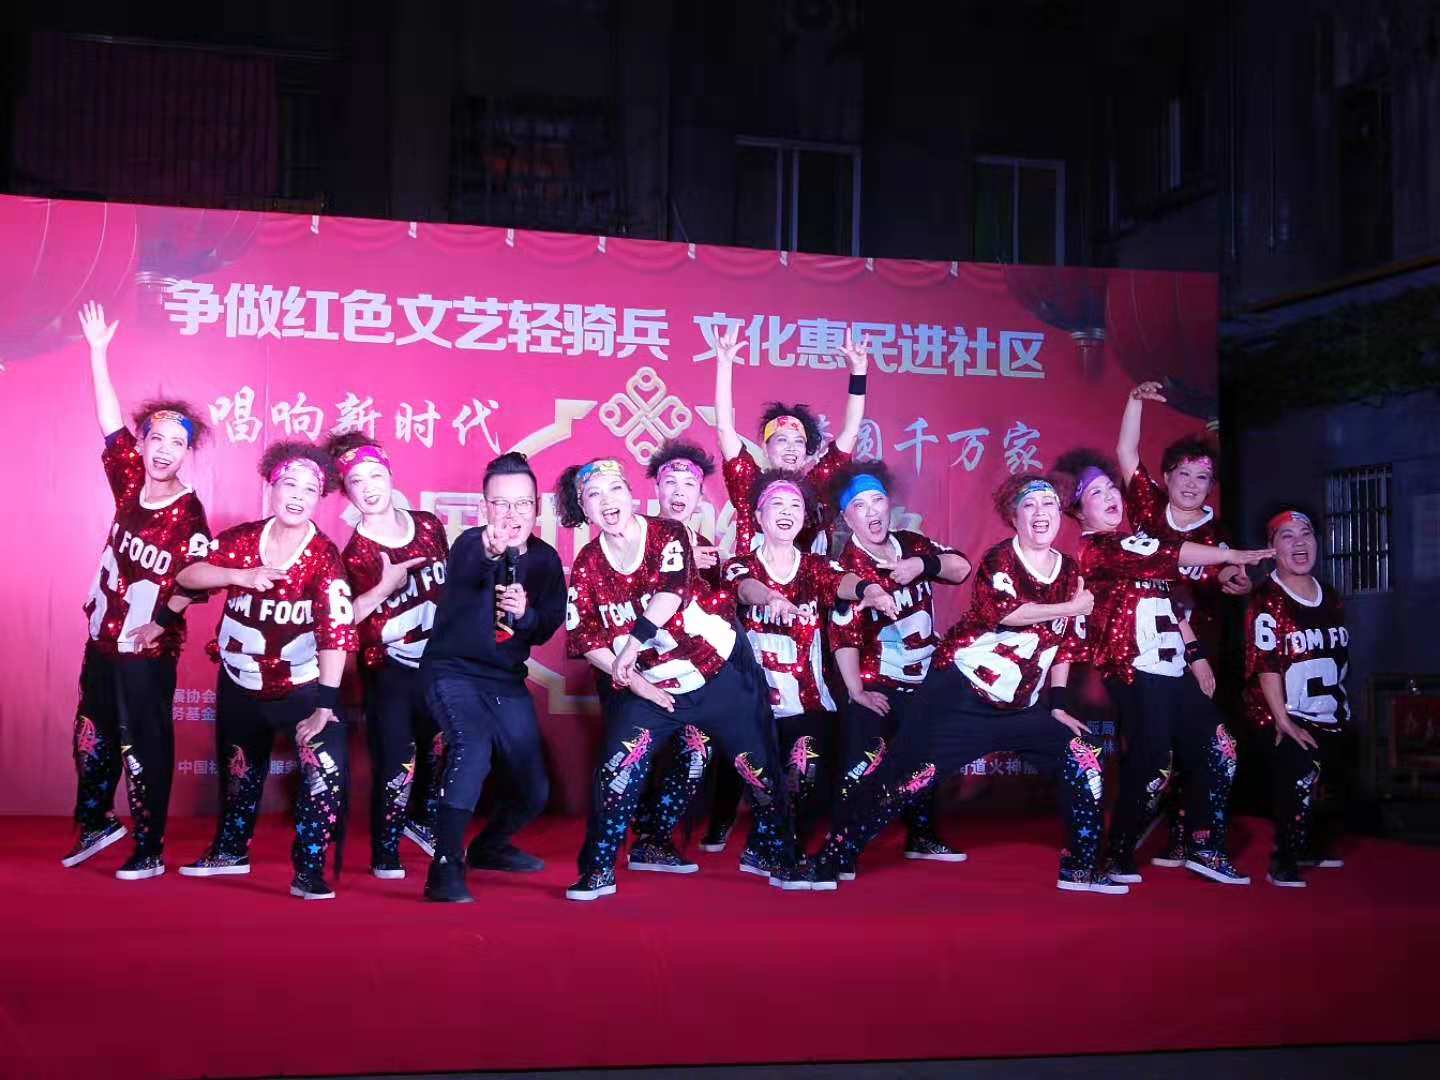 俏奶奶街舞团在专场上表演《潮妈炫舞》.jpg